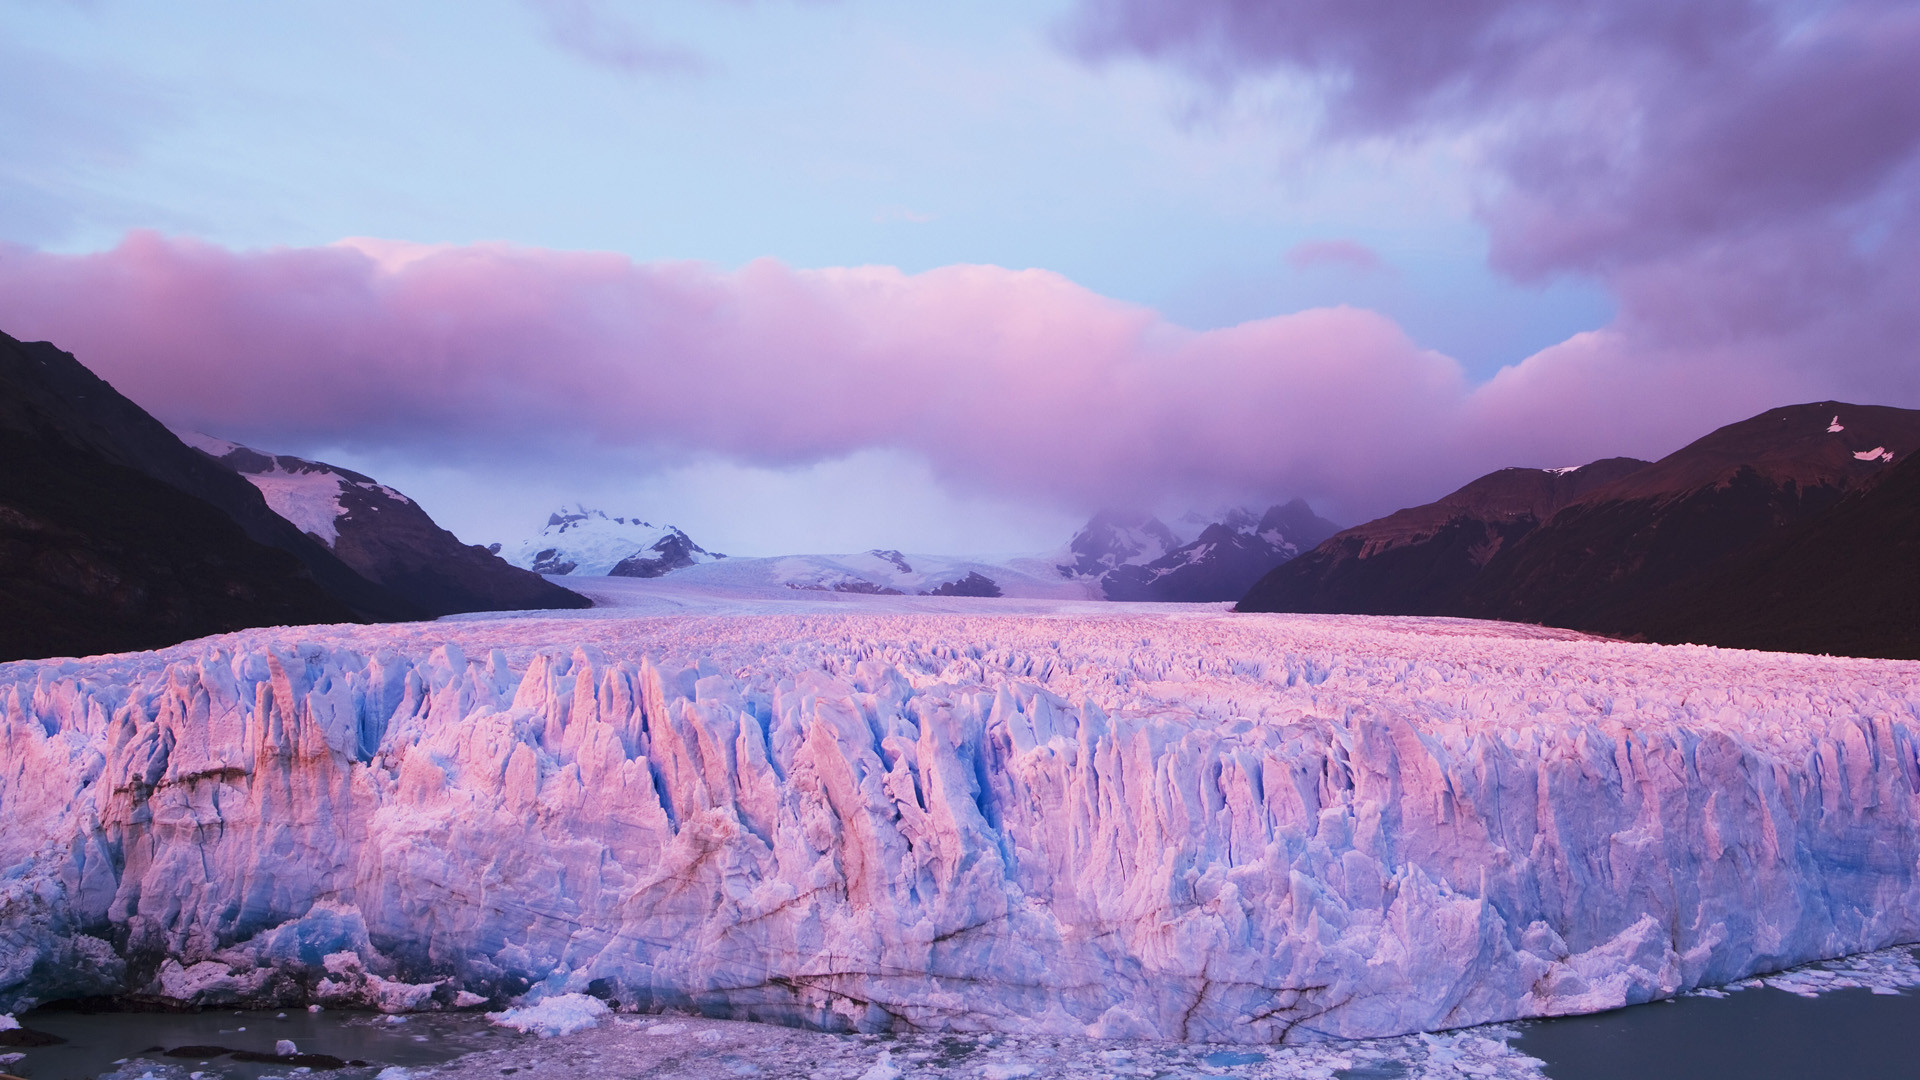 Perito Moreno Glacier Patagonia Nature Landscape Wallpaper Resolution 19x1080 Id 1394 Wallha Com